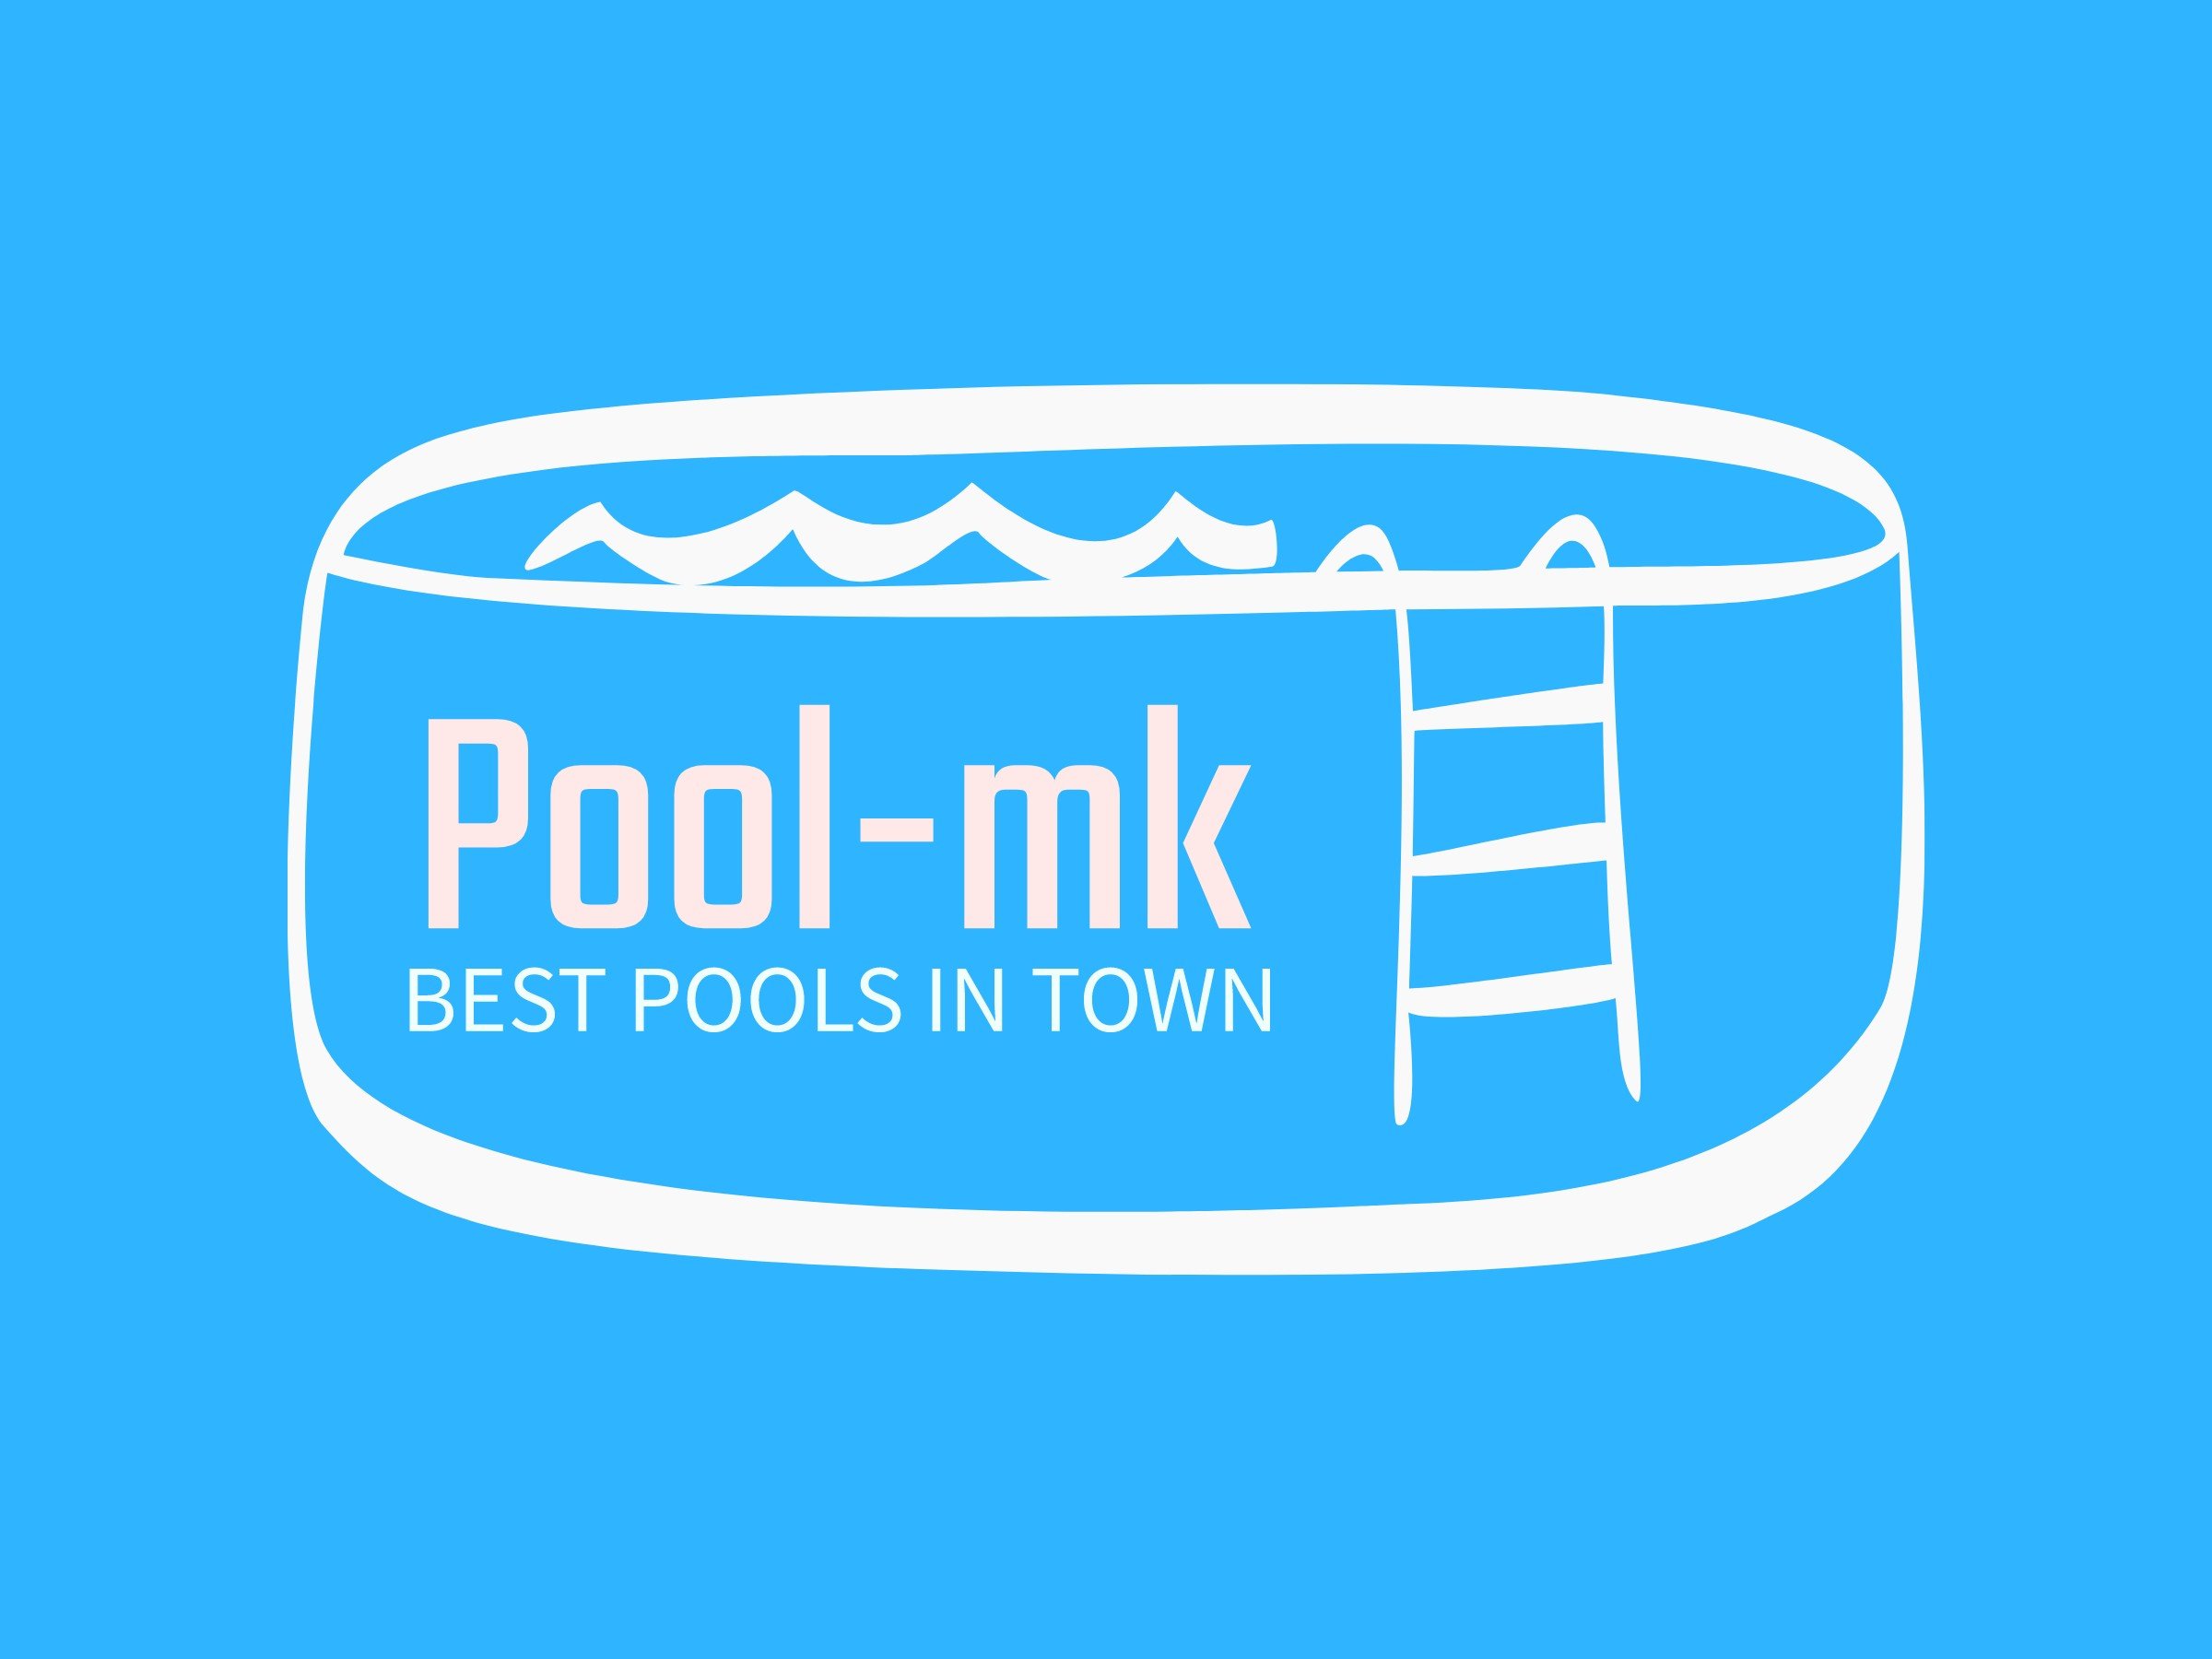 Pool-mk - Best pools in town